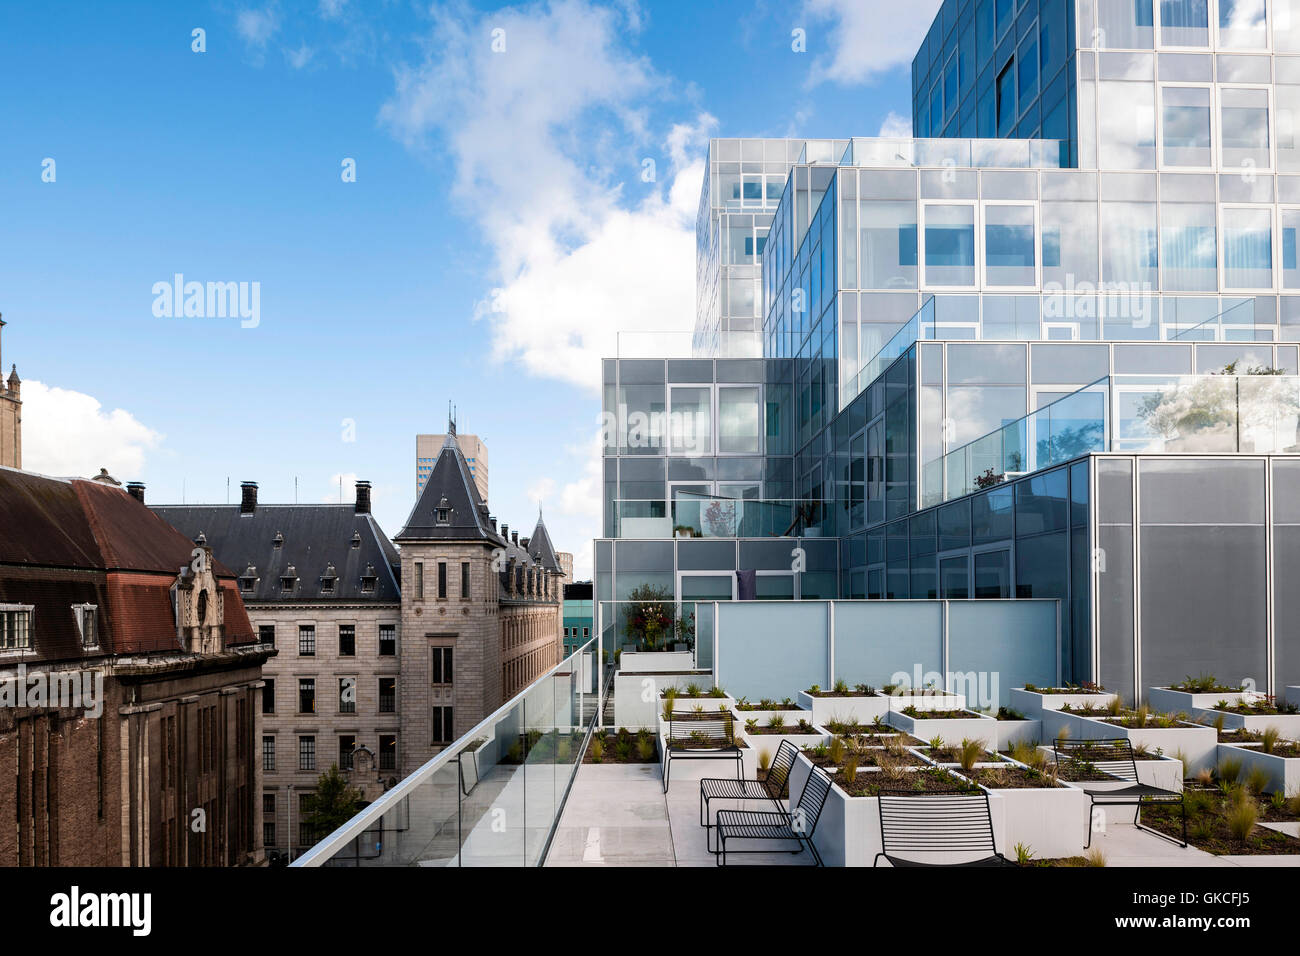 Vista di modulare di nuova costruzione come visto dalla terrazza, municipio sulla sinistra dell'immagine. Timmerhuis, Rotterdam, Paesi Bassi. Architetto: OMA Rem Koolhaas, 2015. Foto Stock